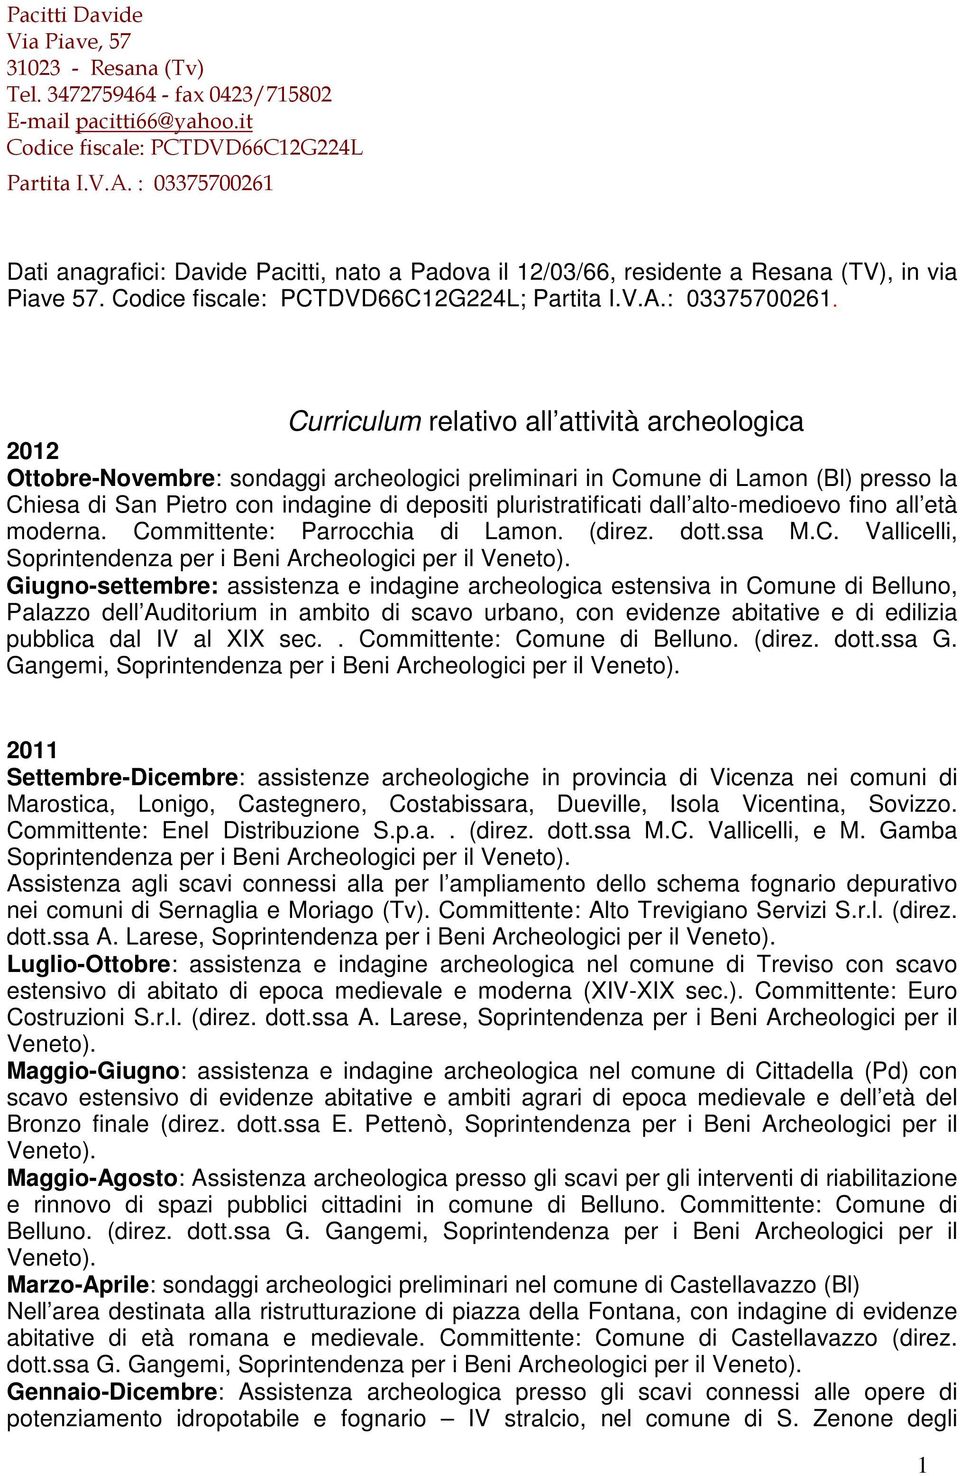 Dati anagrafici: Davide Pacitti, nato a Padova il 12/03/66, residente a Resana (TV), in via Piave 57. Codice fiscale: PCTDVD66C12G224L; Partita I.V.A.: 03375700261.